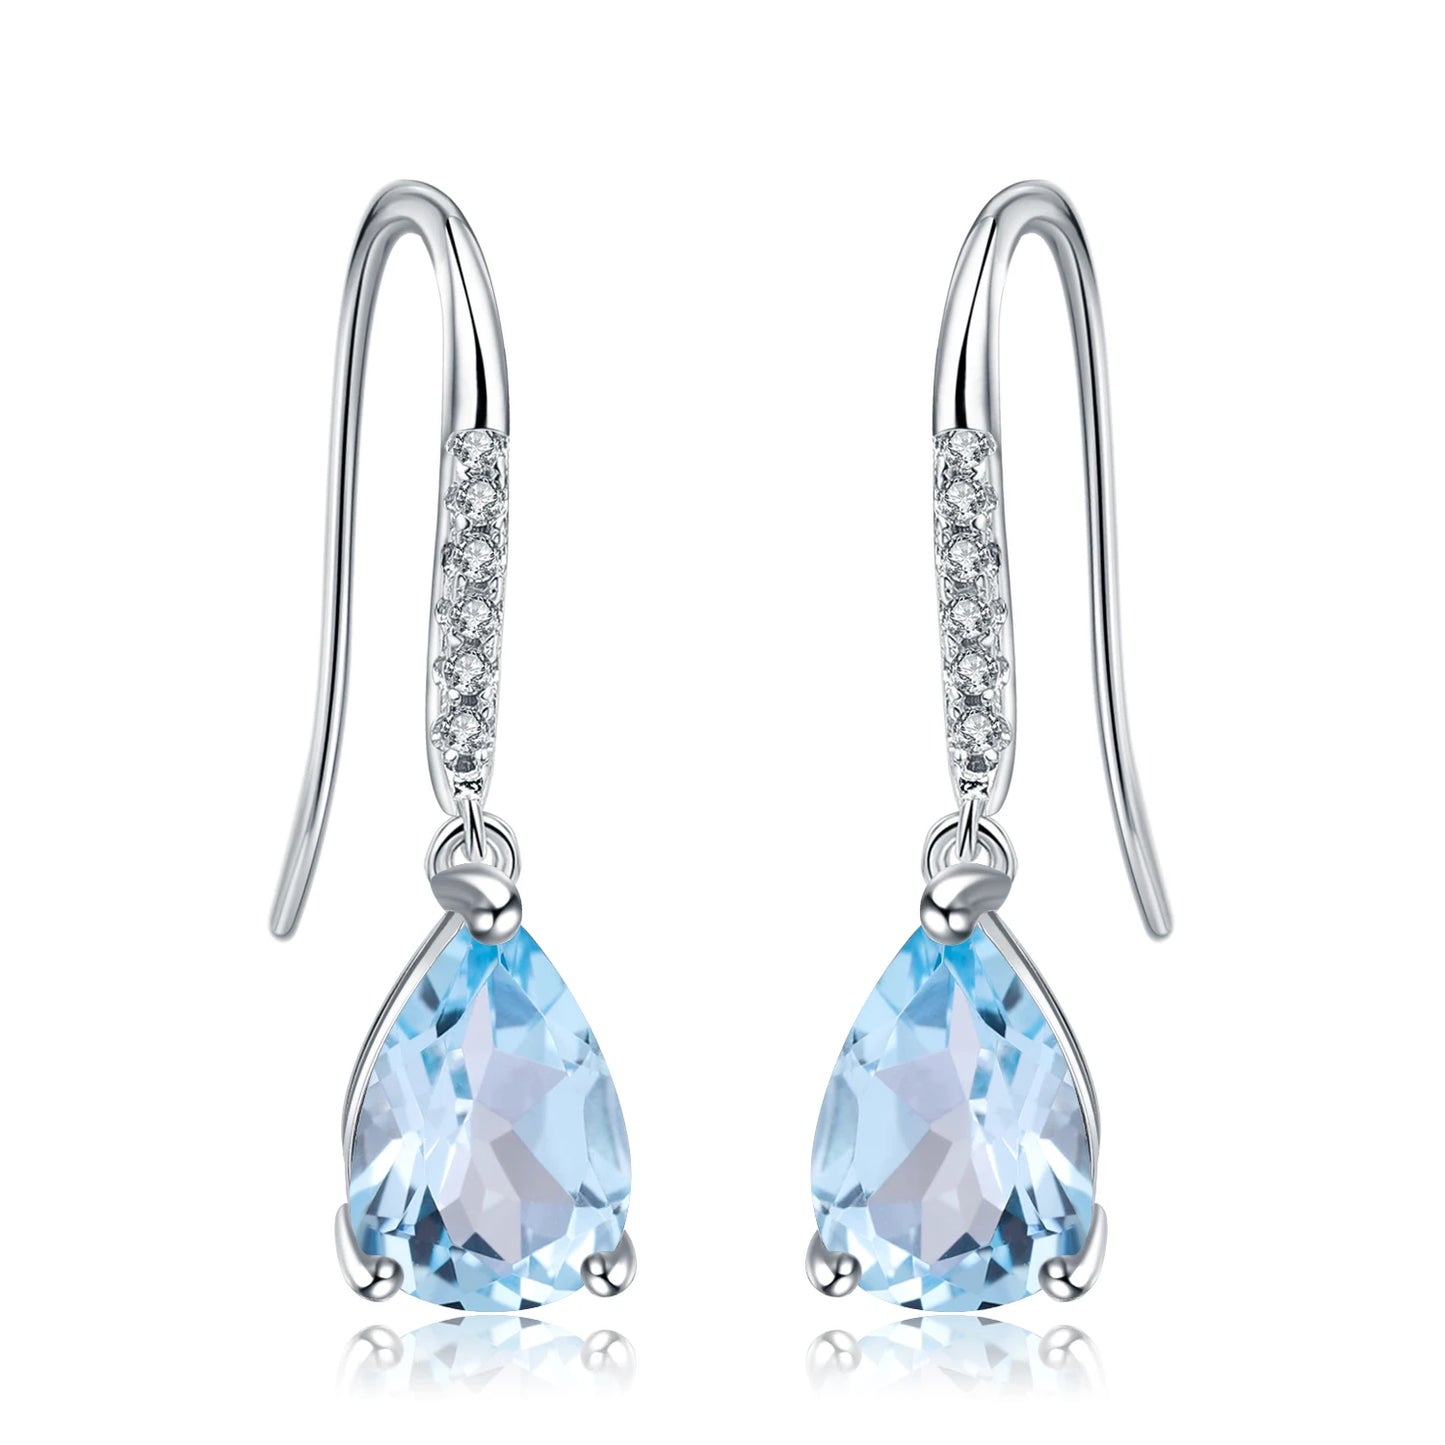 Gem's Ballet Natural Sky Blue Topaz Earrings Genuine 925 Sterling Silver Fine Jewelry 7x10mm Drop Earring For Women Fashion Sky Blue Topaz CHINA